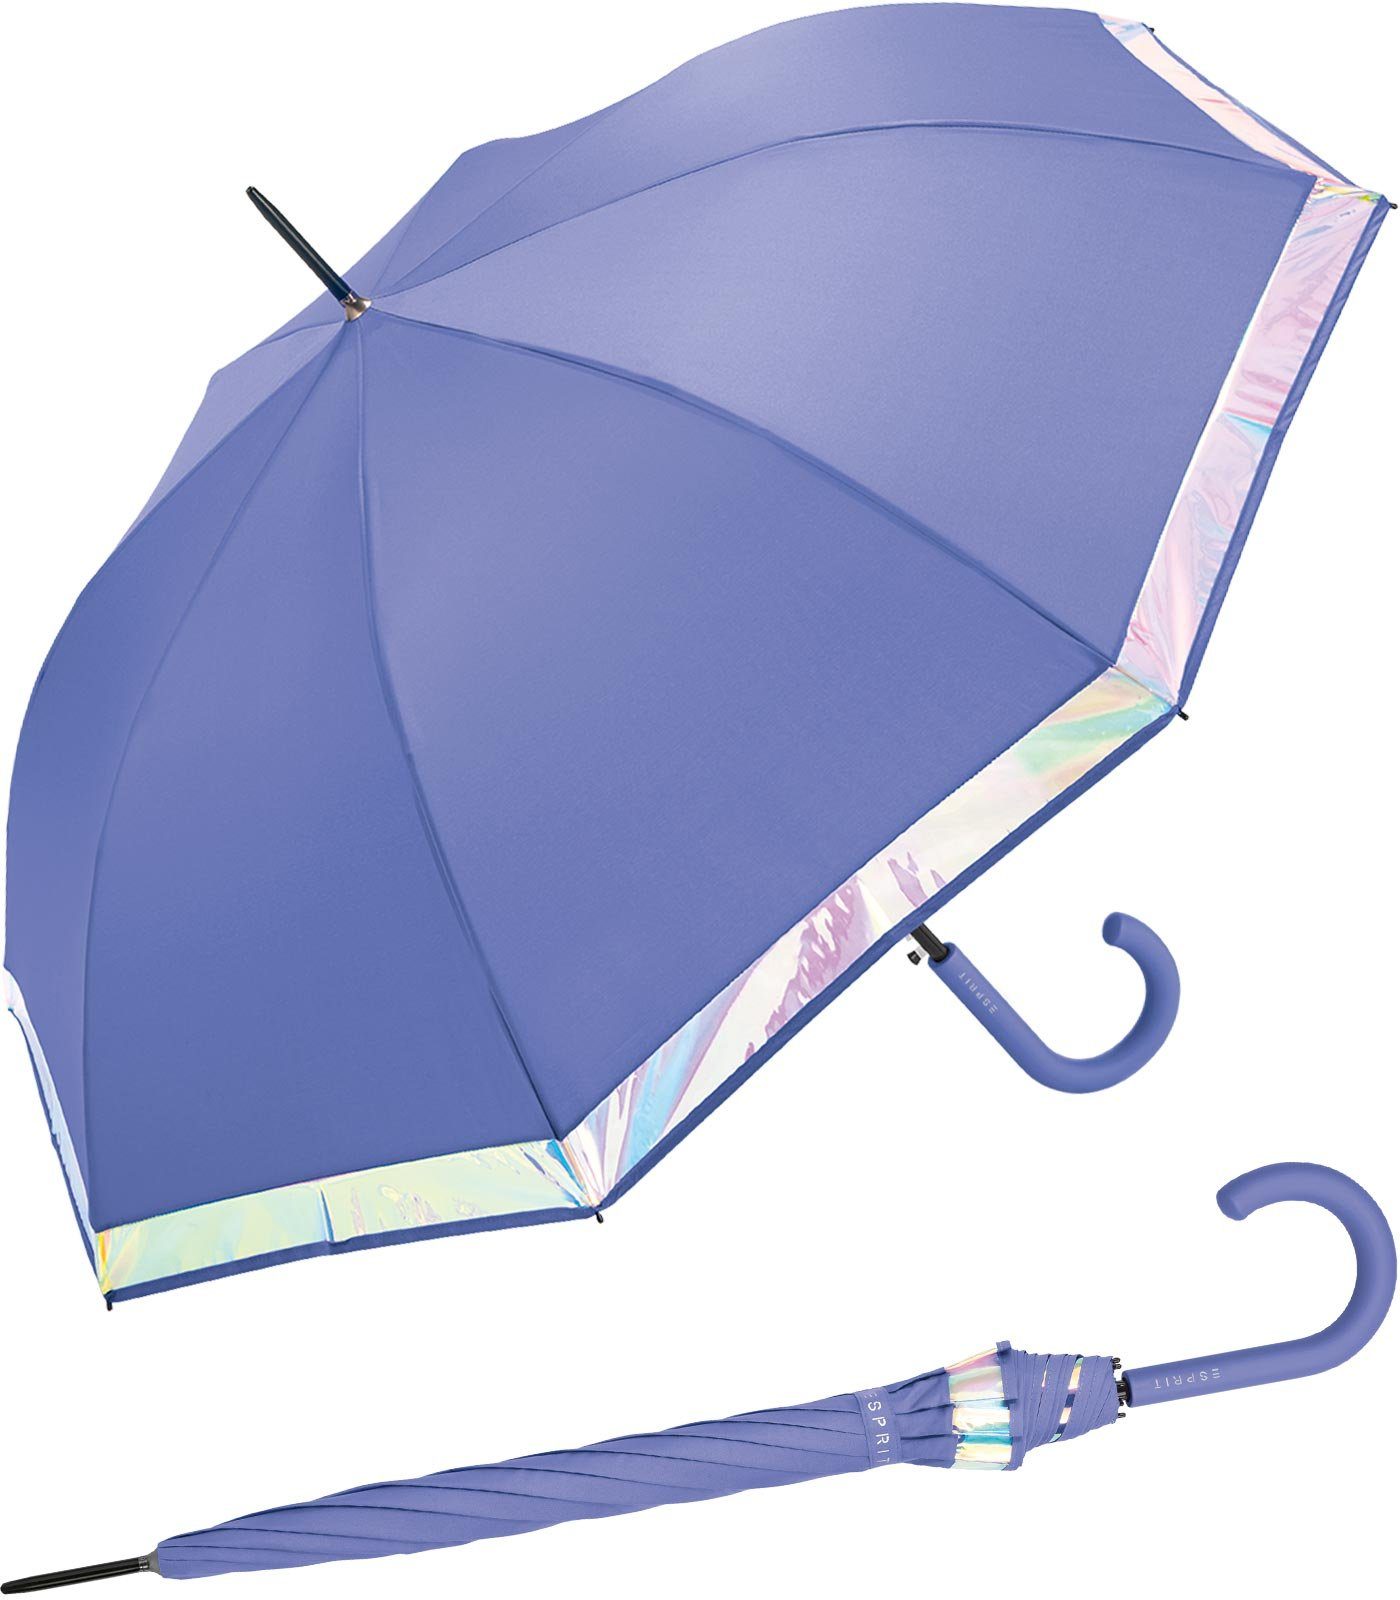 Esprit Langregenschirm Damen Regenschirm mit Automatik Shiny Border, groß und stabil, mit schimmernder Borte